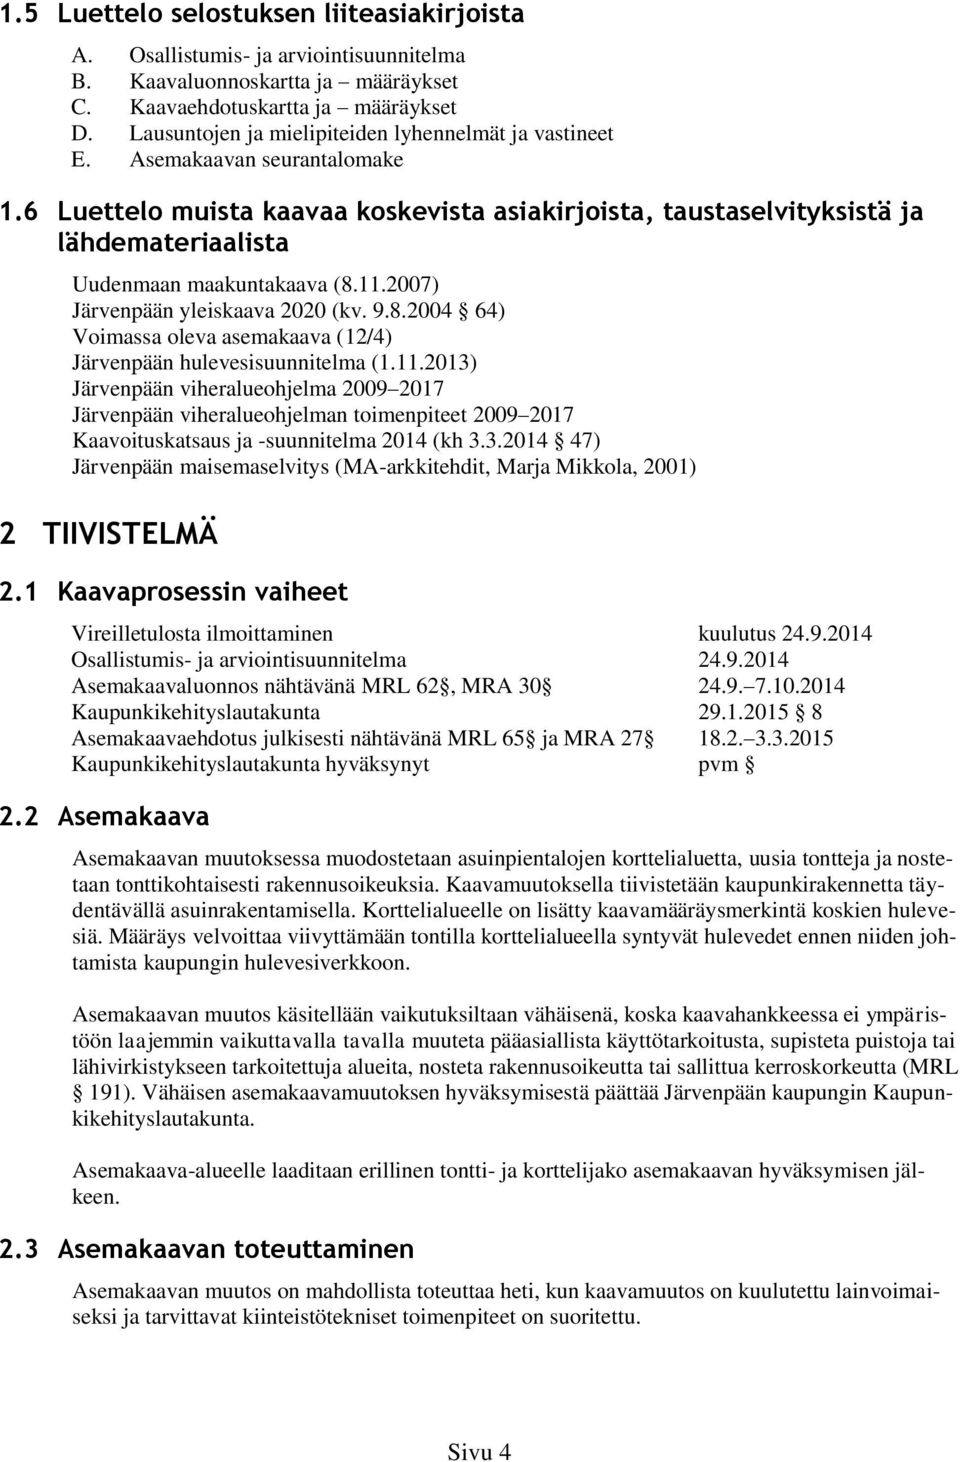 6 Luettelo muista kaavaa koskevista asiakirjoista, taustaselvityksistä ja lähdemateriaalista Uudenmaan maakuntakaava (8.11.2007) Järvenpään yleiskaava 2020 (kv. 9.8.2004 64) Voimassa oleva asemakaava (12/4) Järvenpään hulevesisuunnitelma (1.